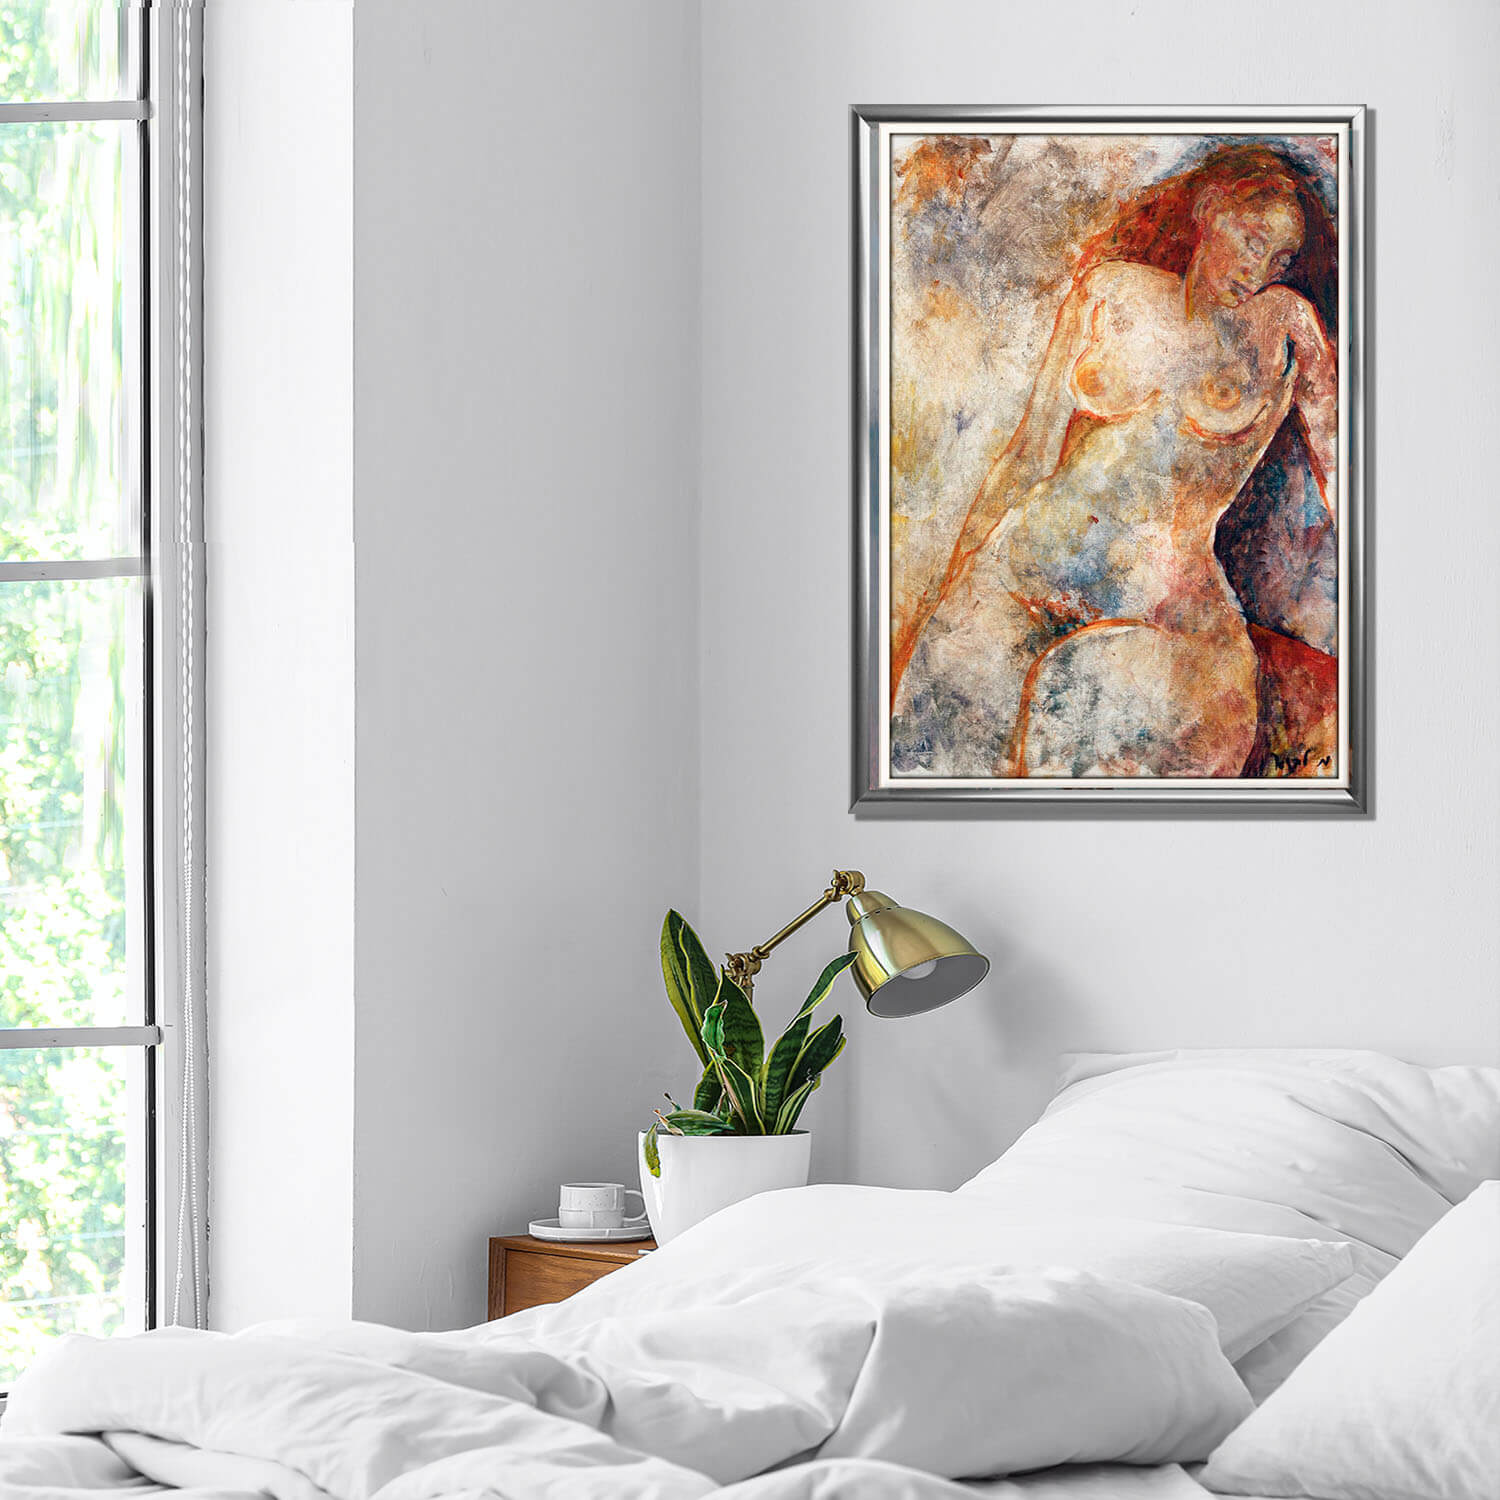 ציור עירום של אדומת שיער מעל המיטה בחדר שינה לבן ציירת מירי לביא